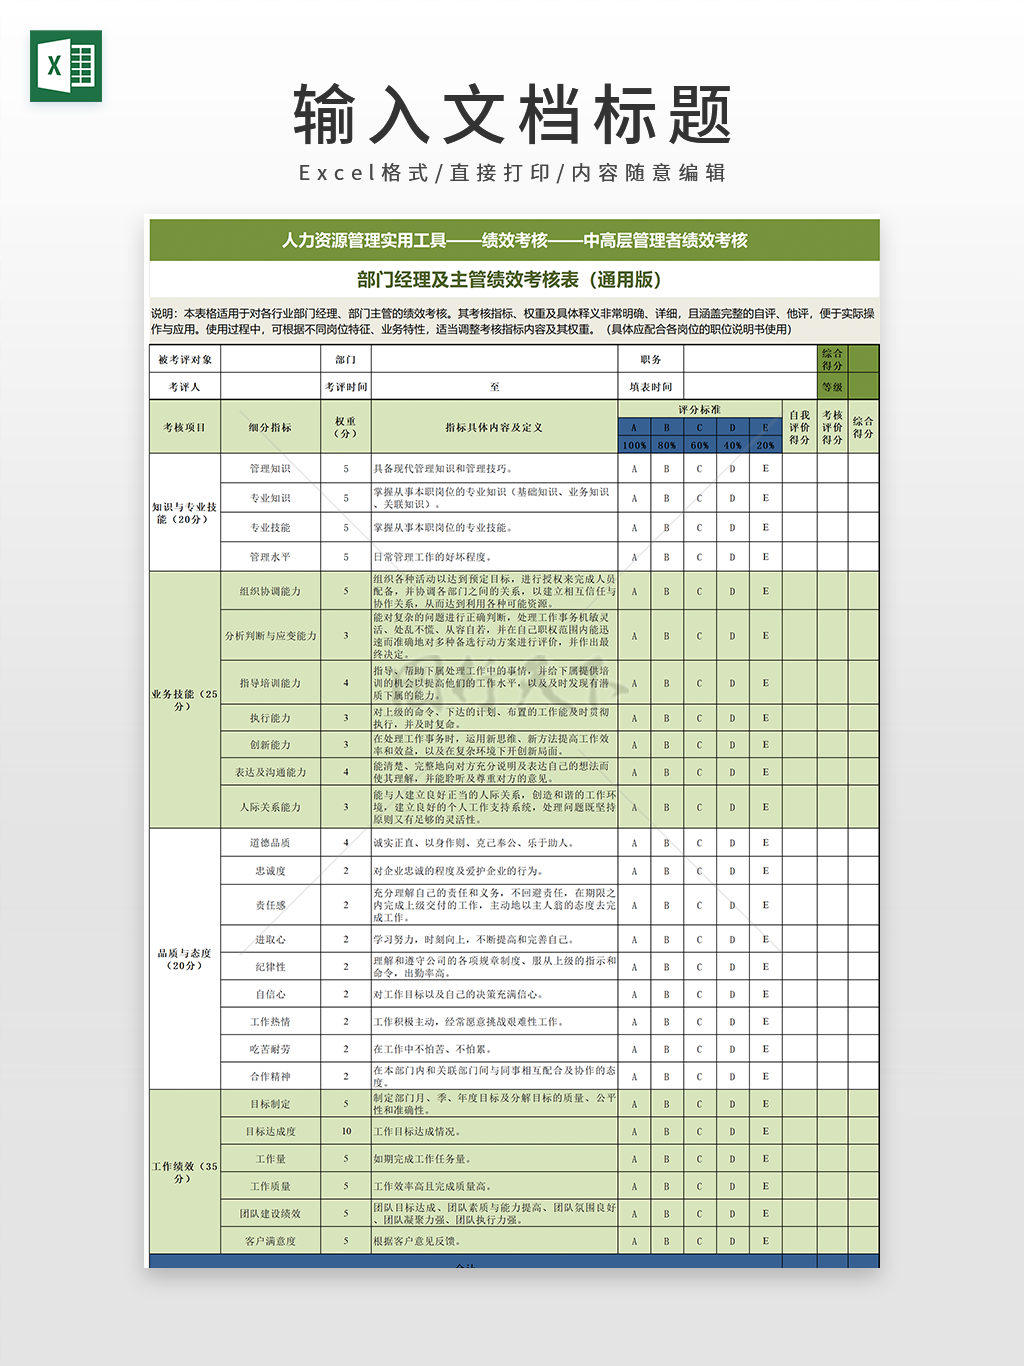 部门经理及主管绩效考核表（通用版）